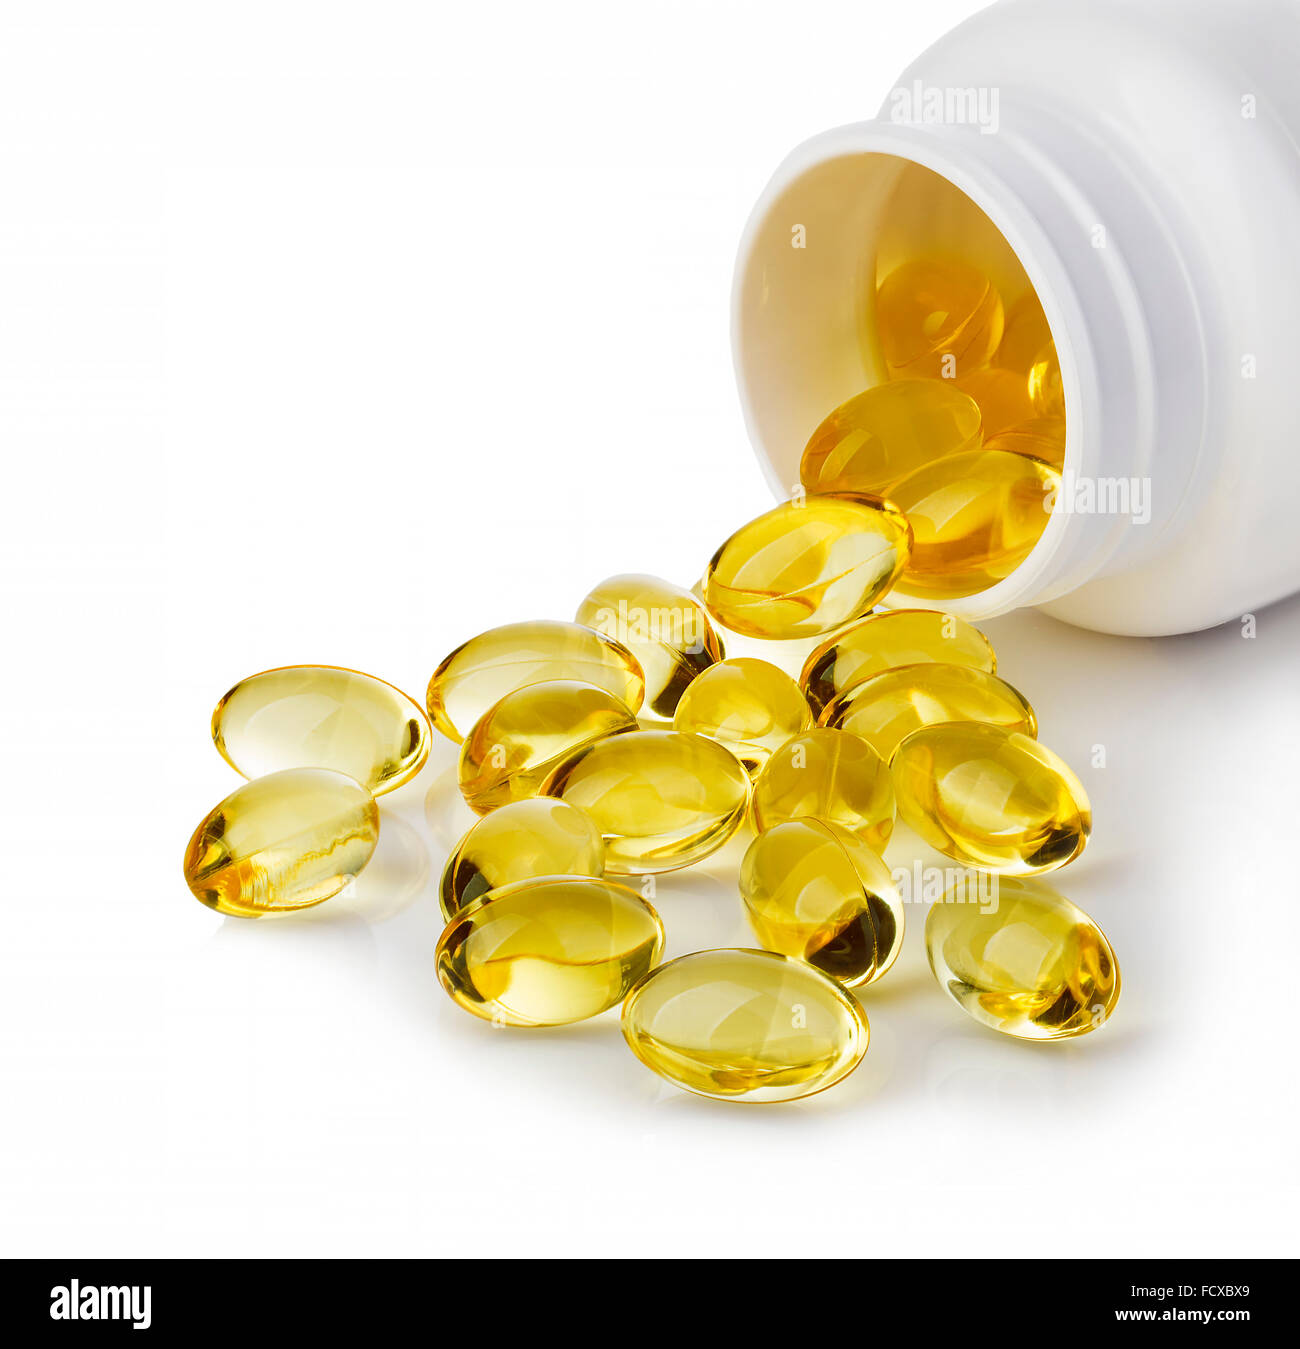 Gels doux comprimés avec de l'huile oméga-3 s'échappant de bouteille de pilules close-up isolé sur un fond blanc. Banque D'Images